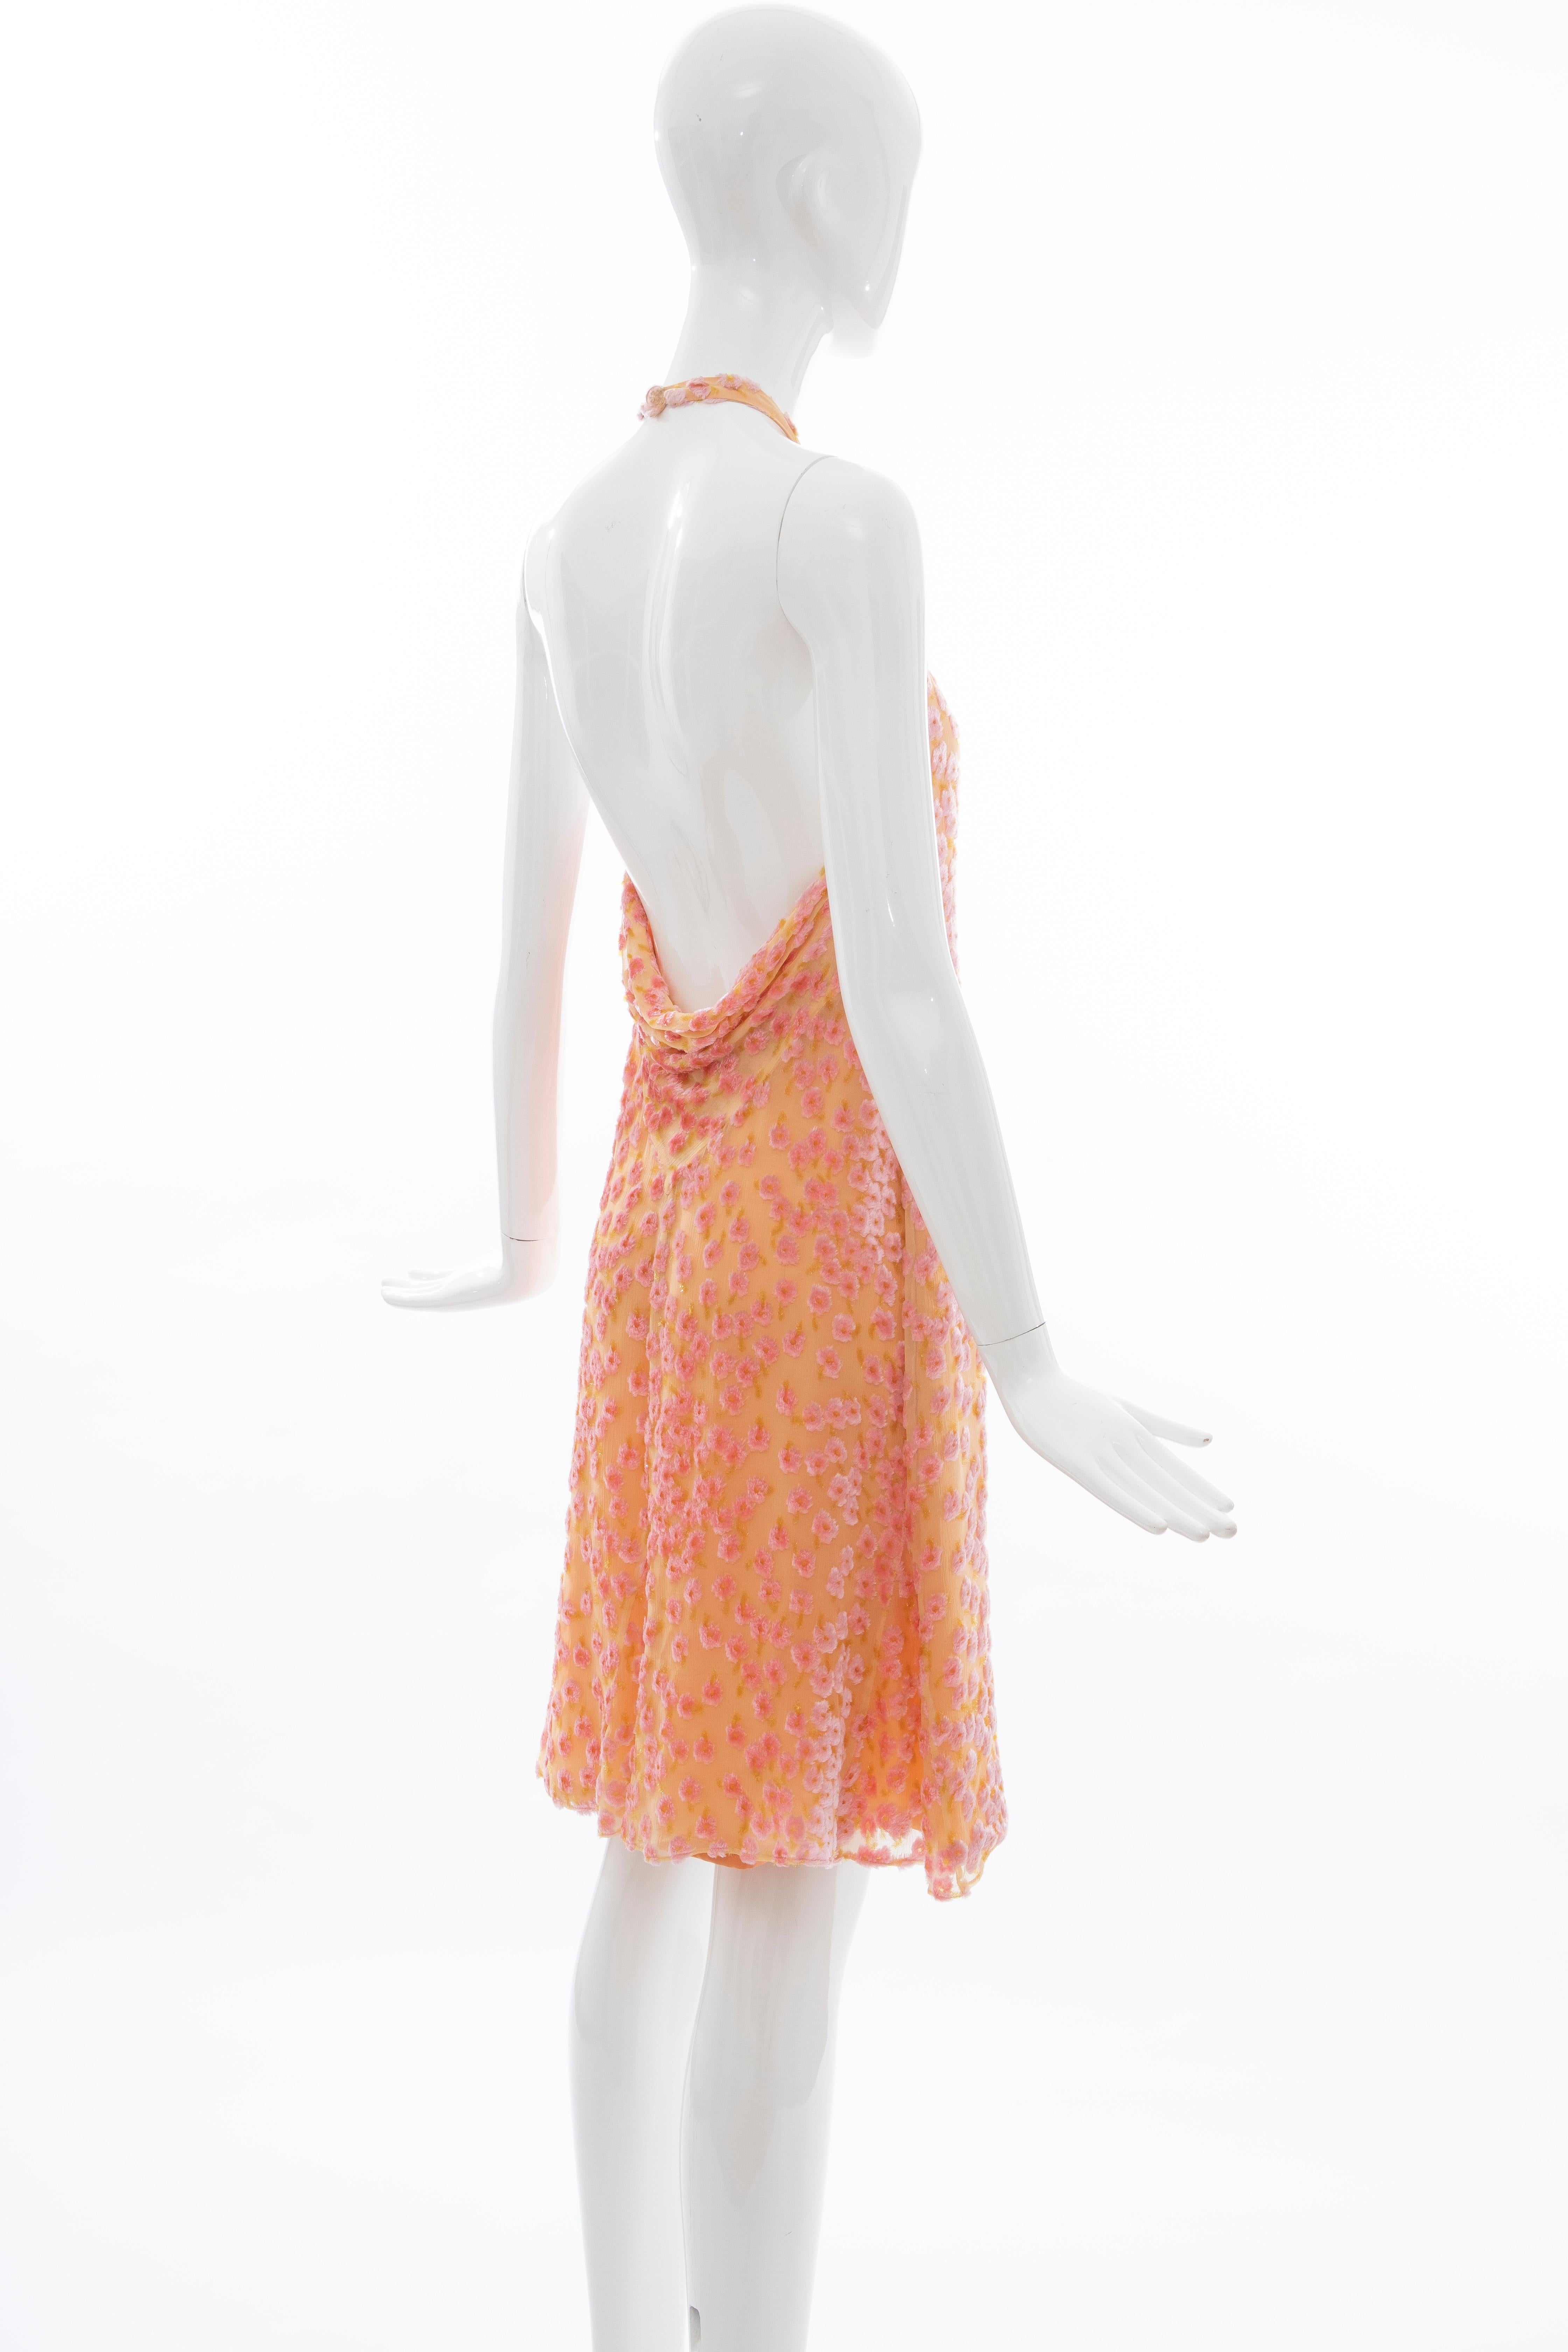 Chanel Tangerine & Pink Voided Silk Chiffon Velvet Halter Dress, Cruise 2001 For Sale 2